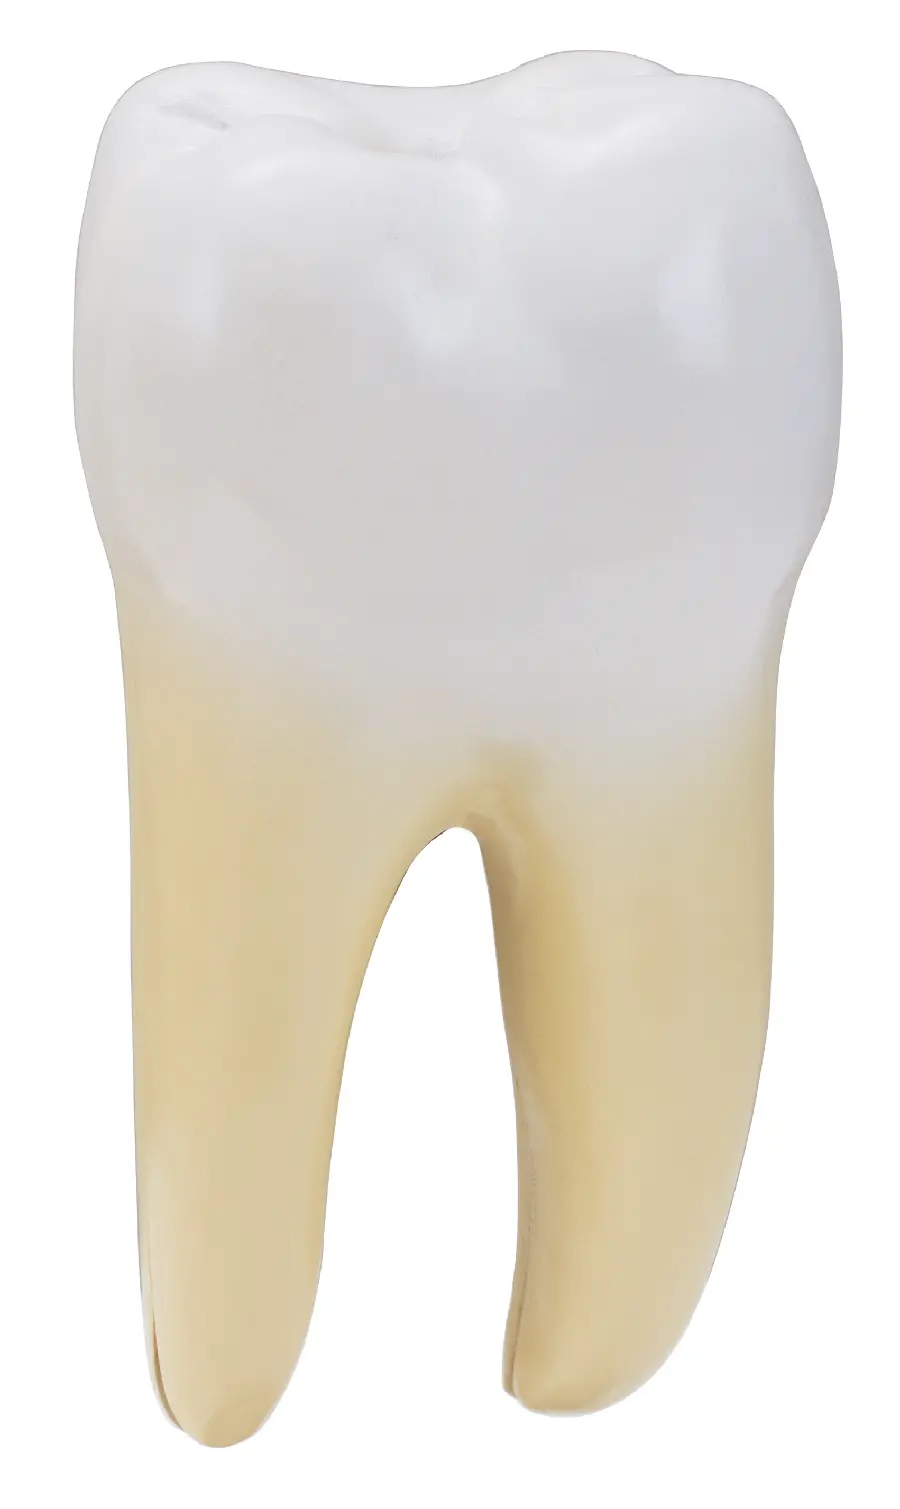 عکس مولاژ دندان در پس زمینه سفید